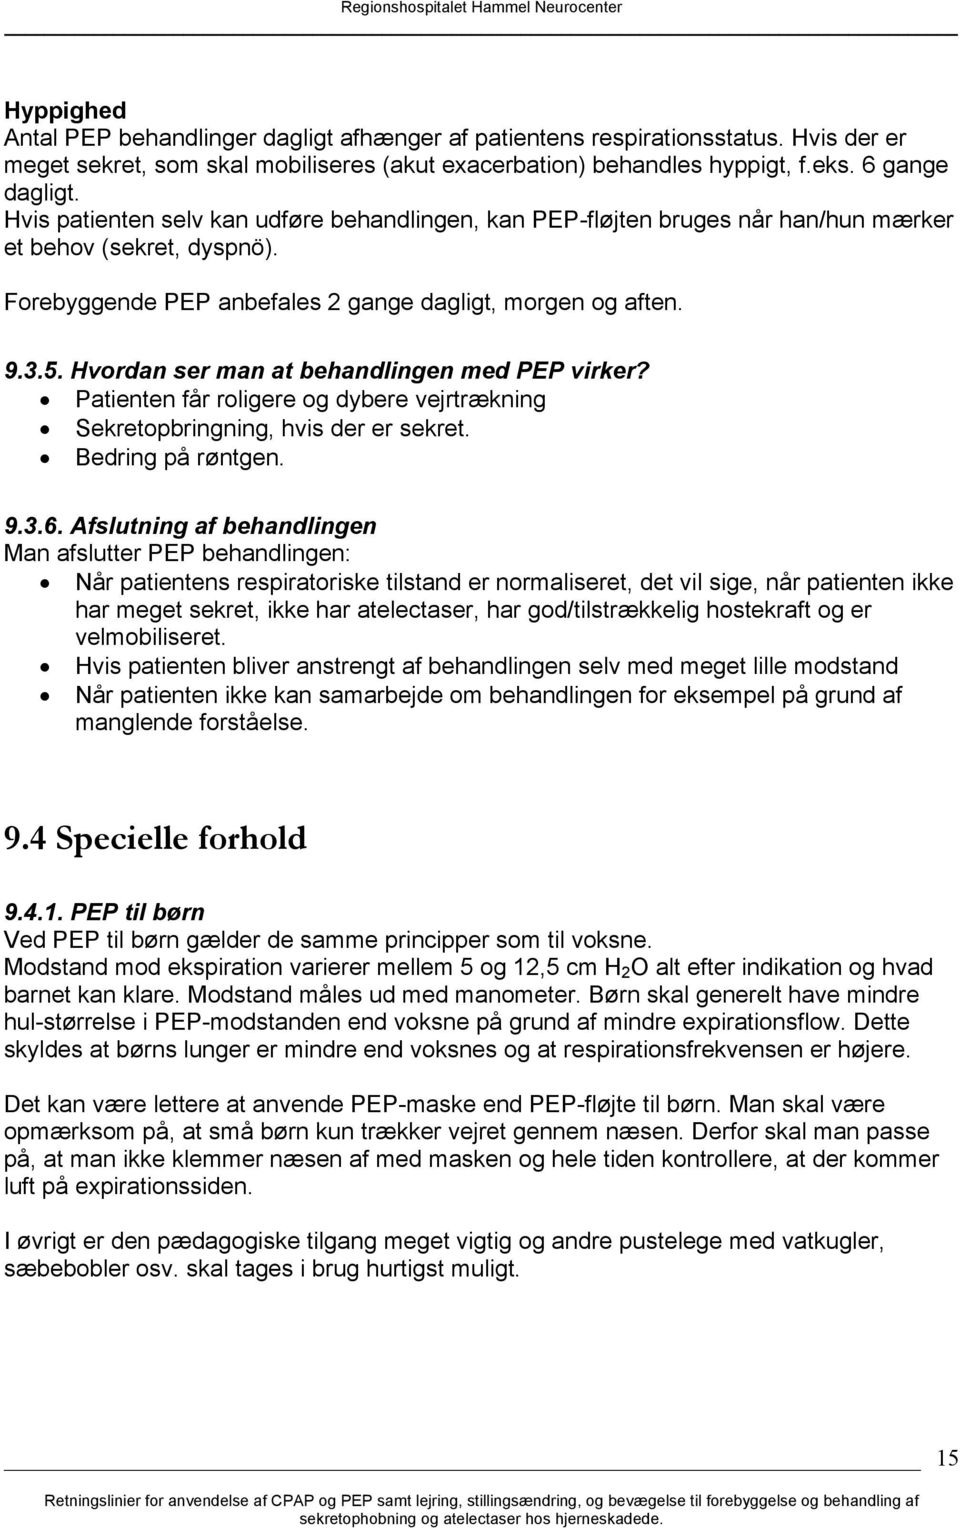 Udviklingsenheden. Regionshospitalet Hammel Neurocenter - PDF Free ...